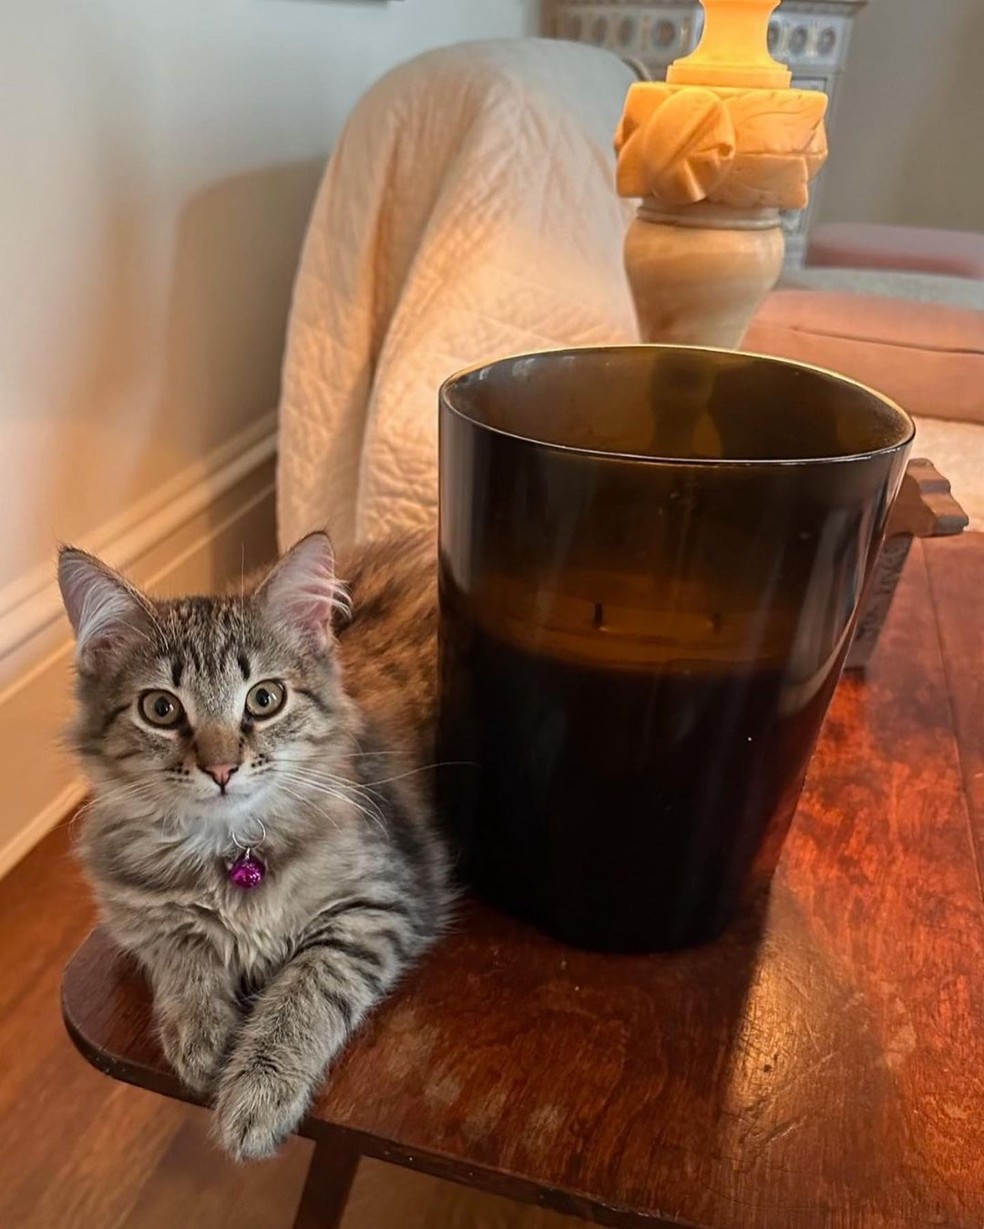 Lotus, novo gato de Sarah Jessica Parker — Foto: Instagram